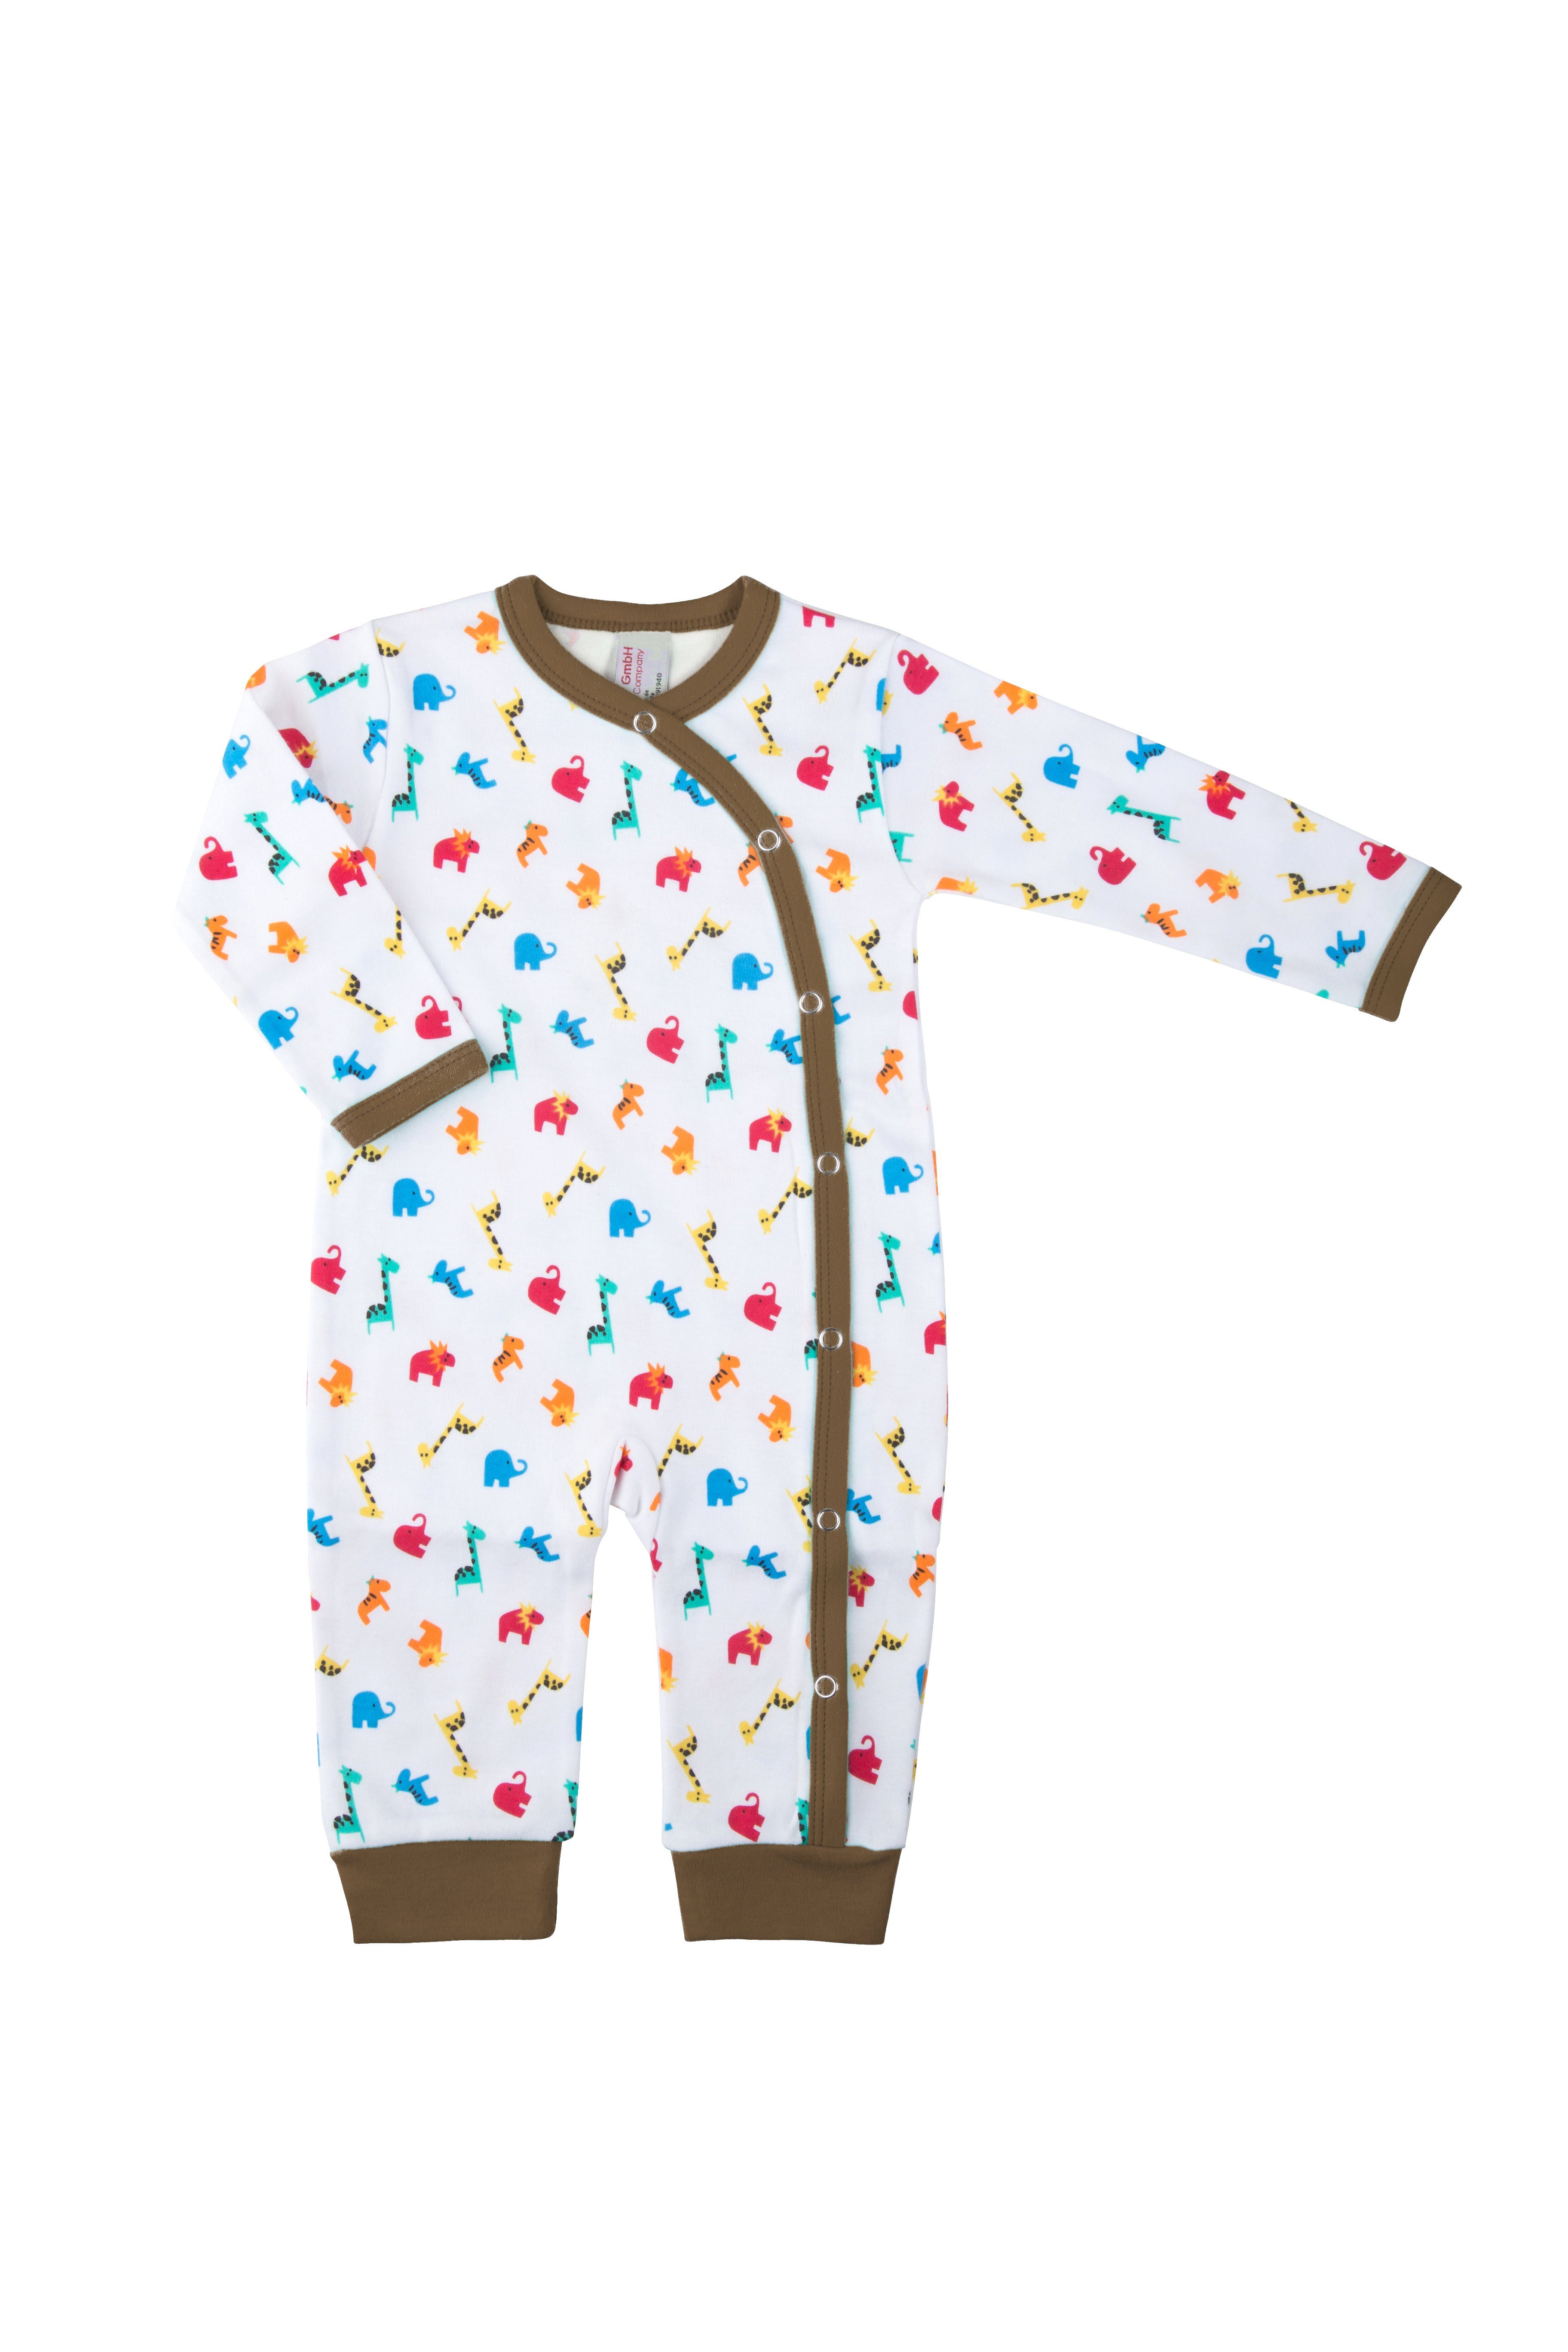 Clinotest Schlafoverall aus Schlafanzug Baby Braun Jersey, Druckknöpfe Zootiere